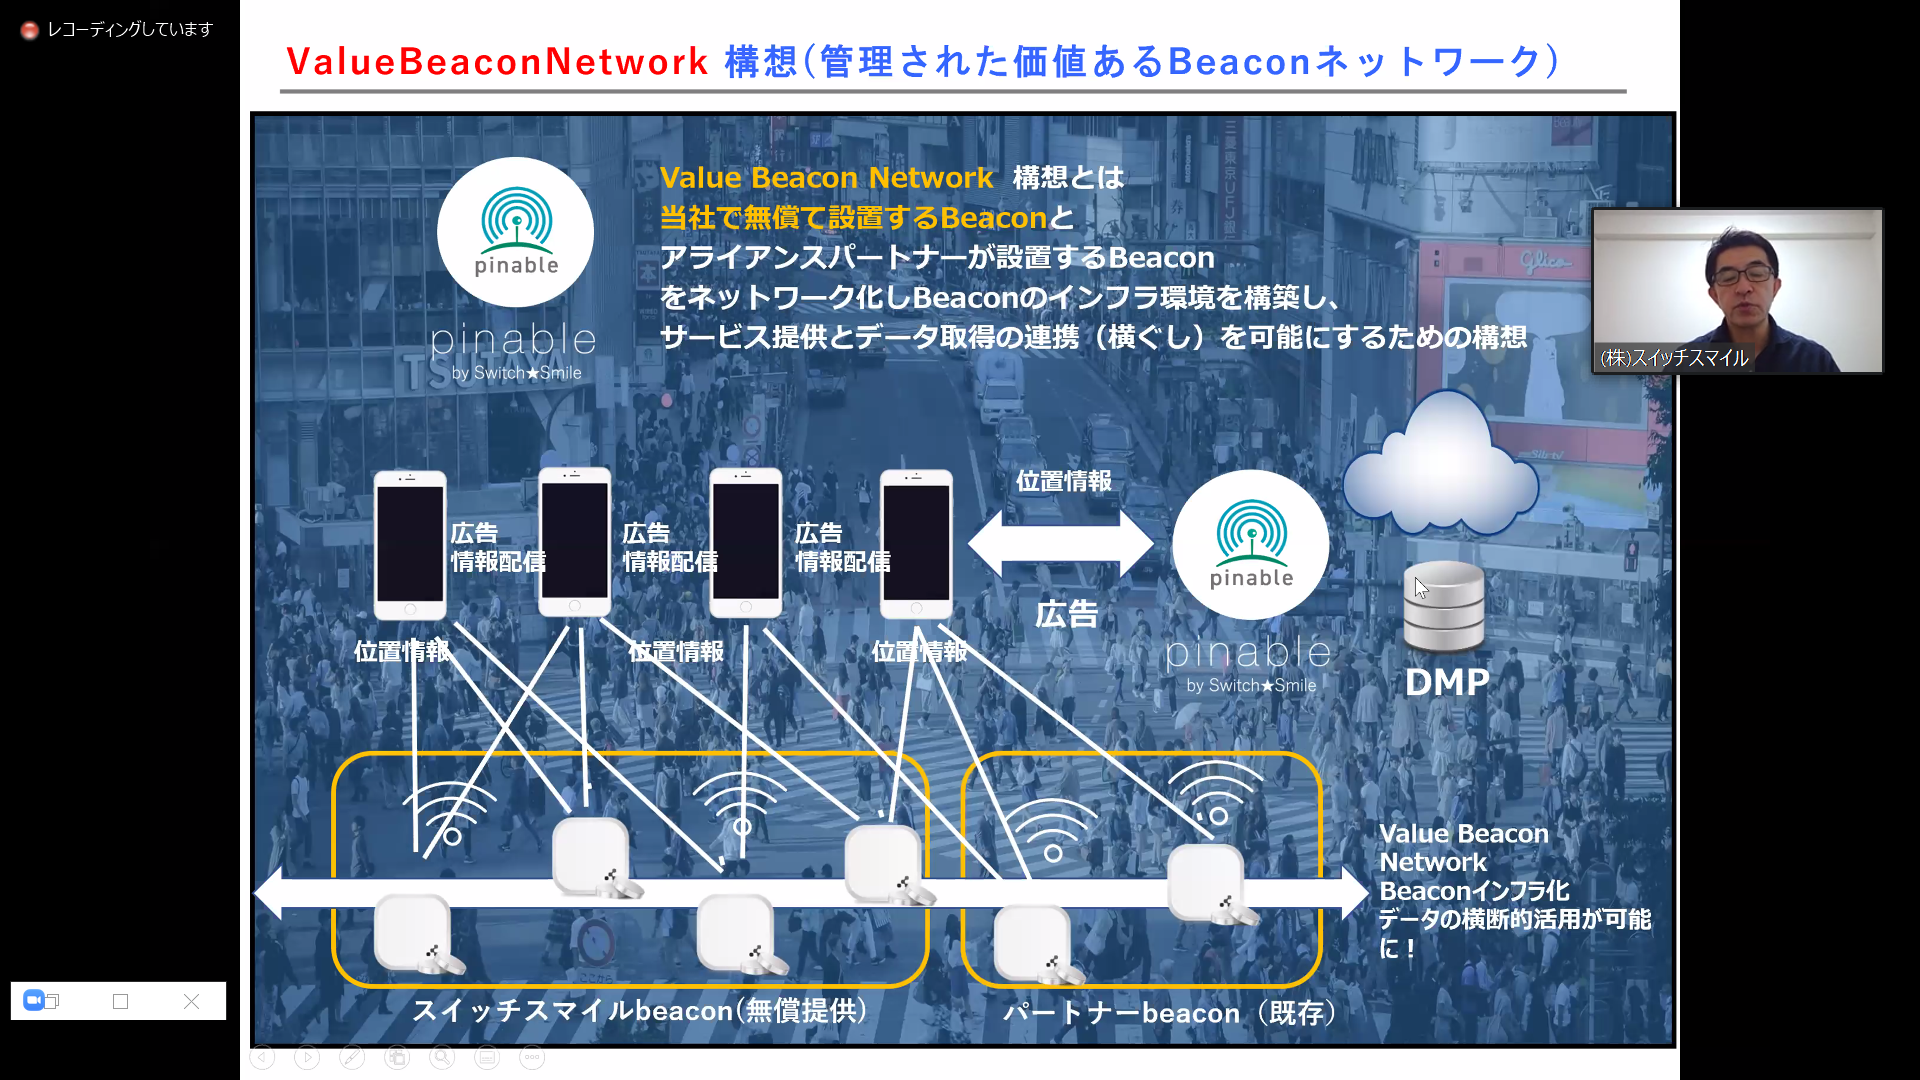 『beaconを活用したPOI位置情報プラットフォーム「pinable」』についてのプレゼンテーション資料